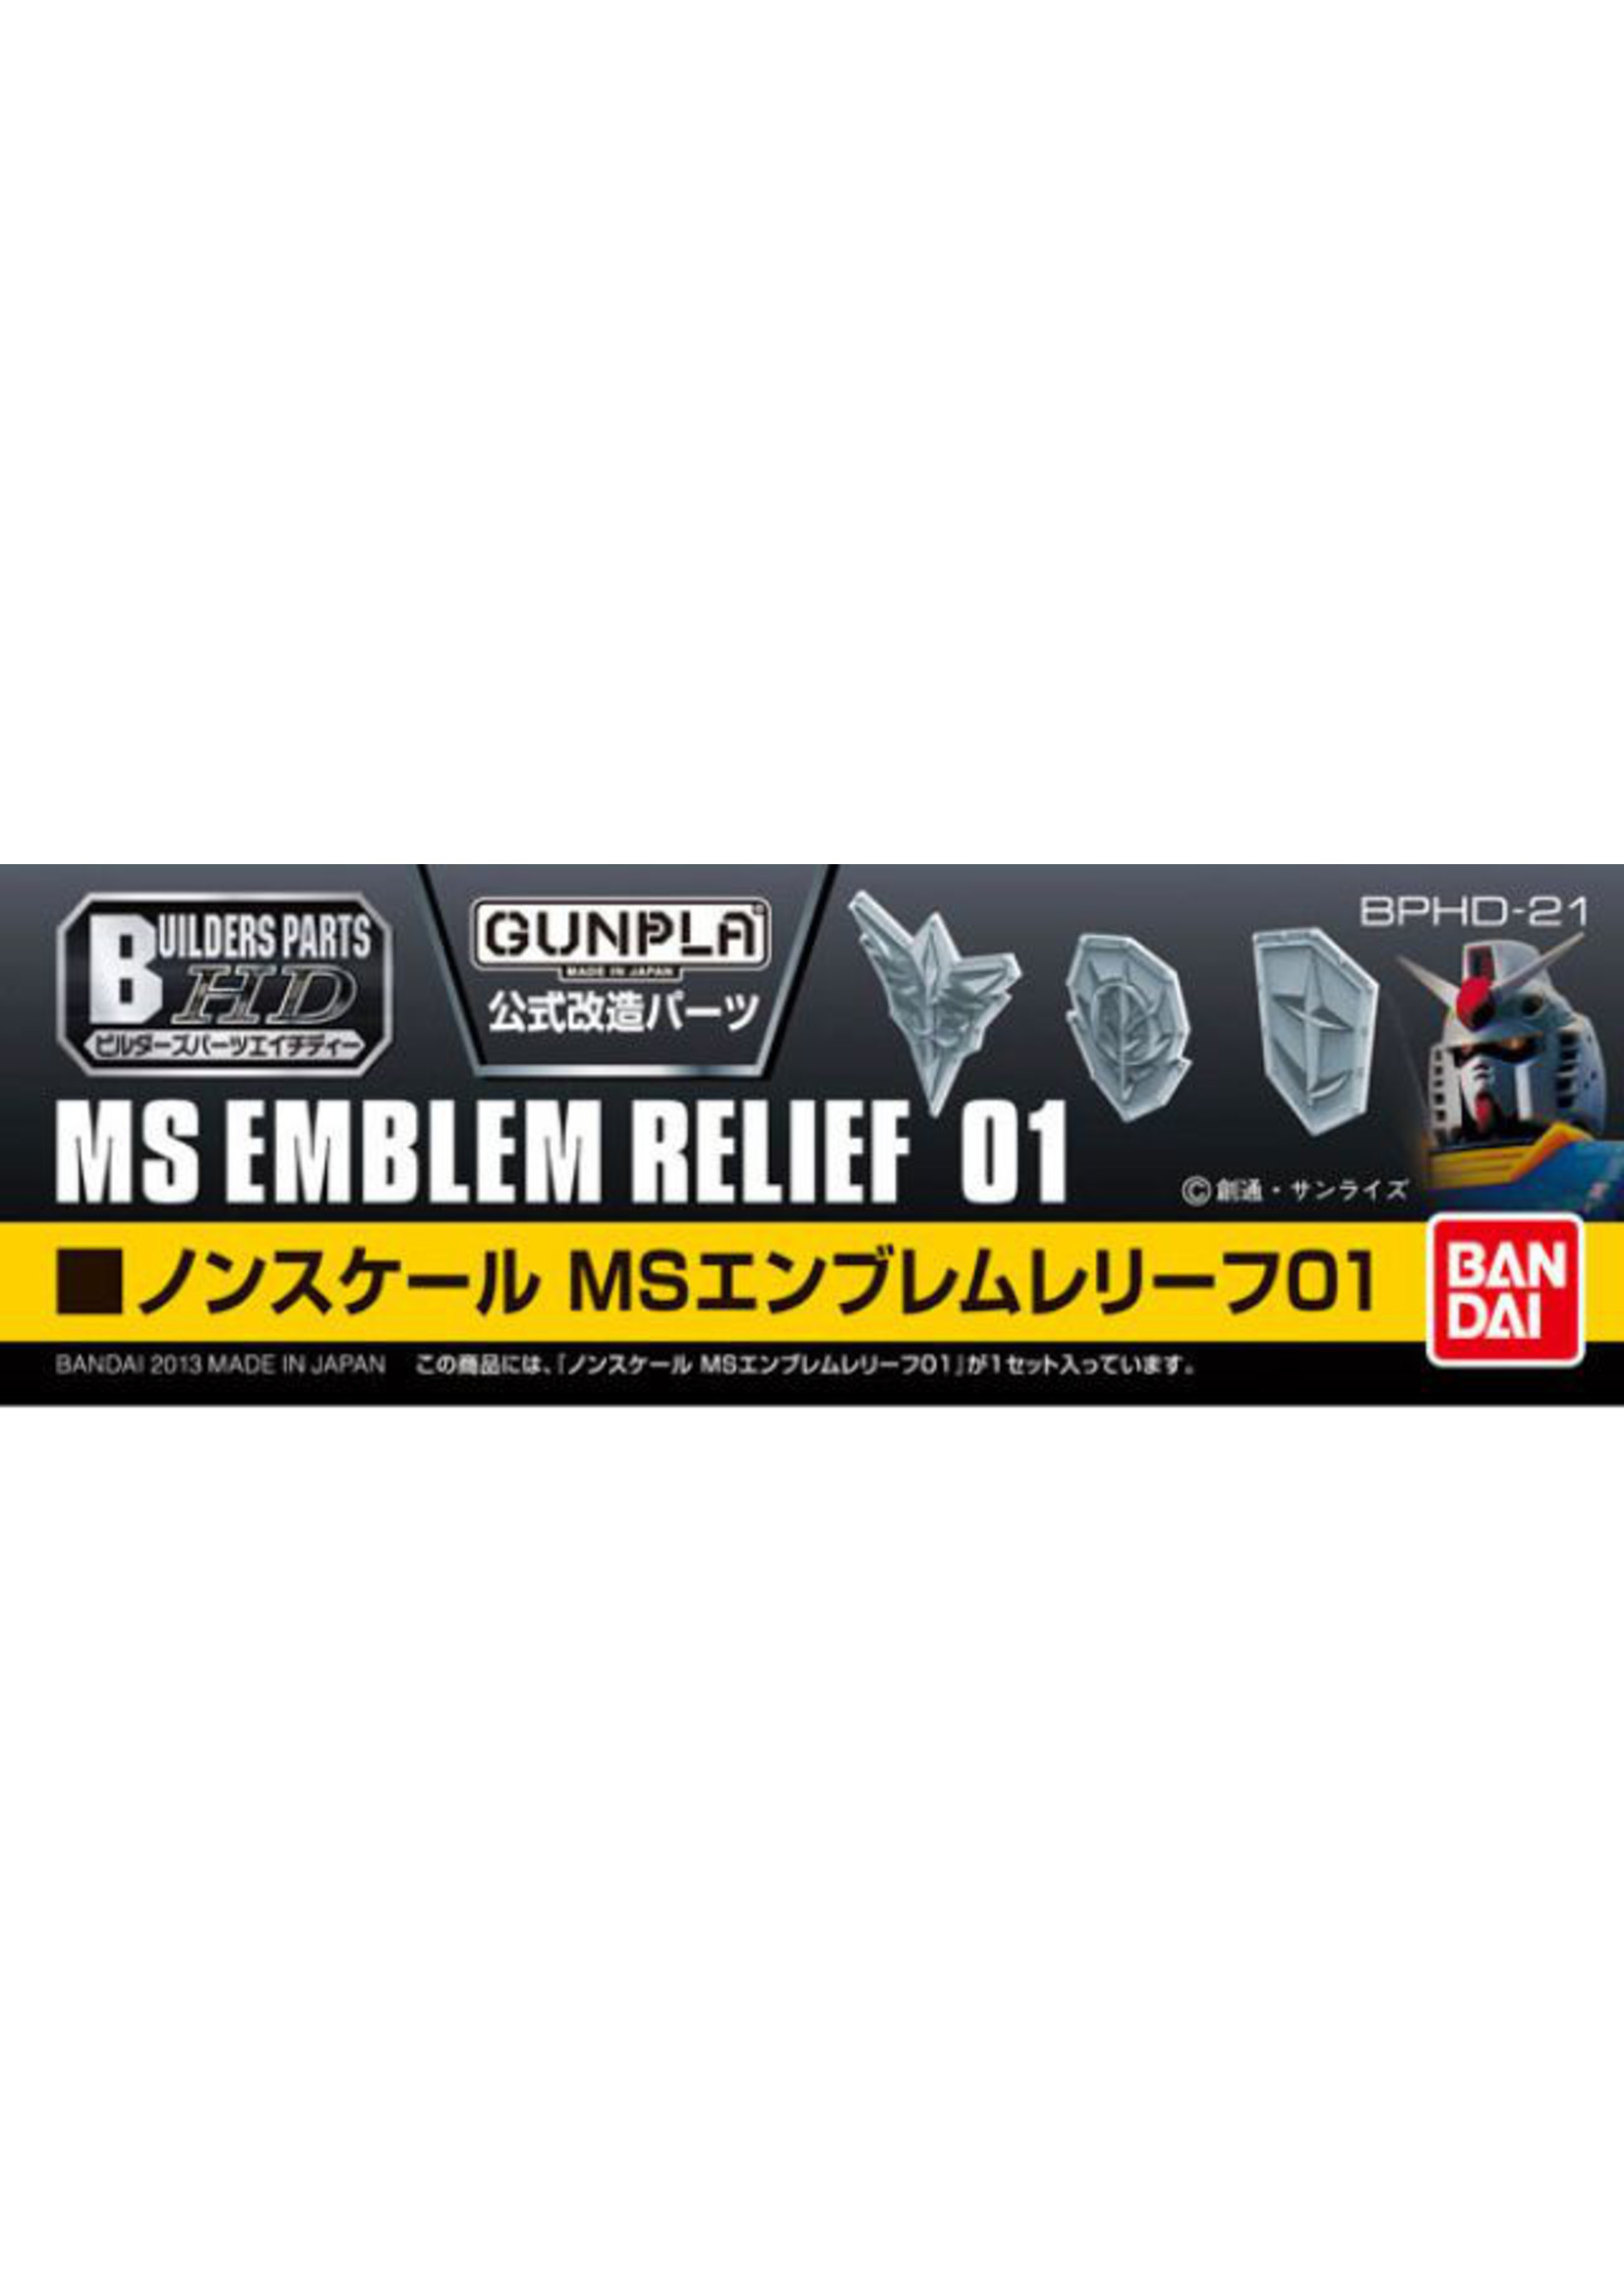 Bandai Builder Parts HD-21 - MS Emblem Relief 01